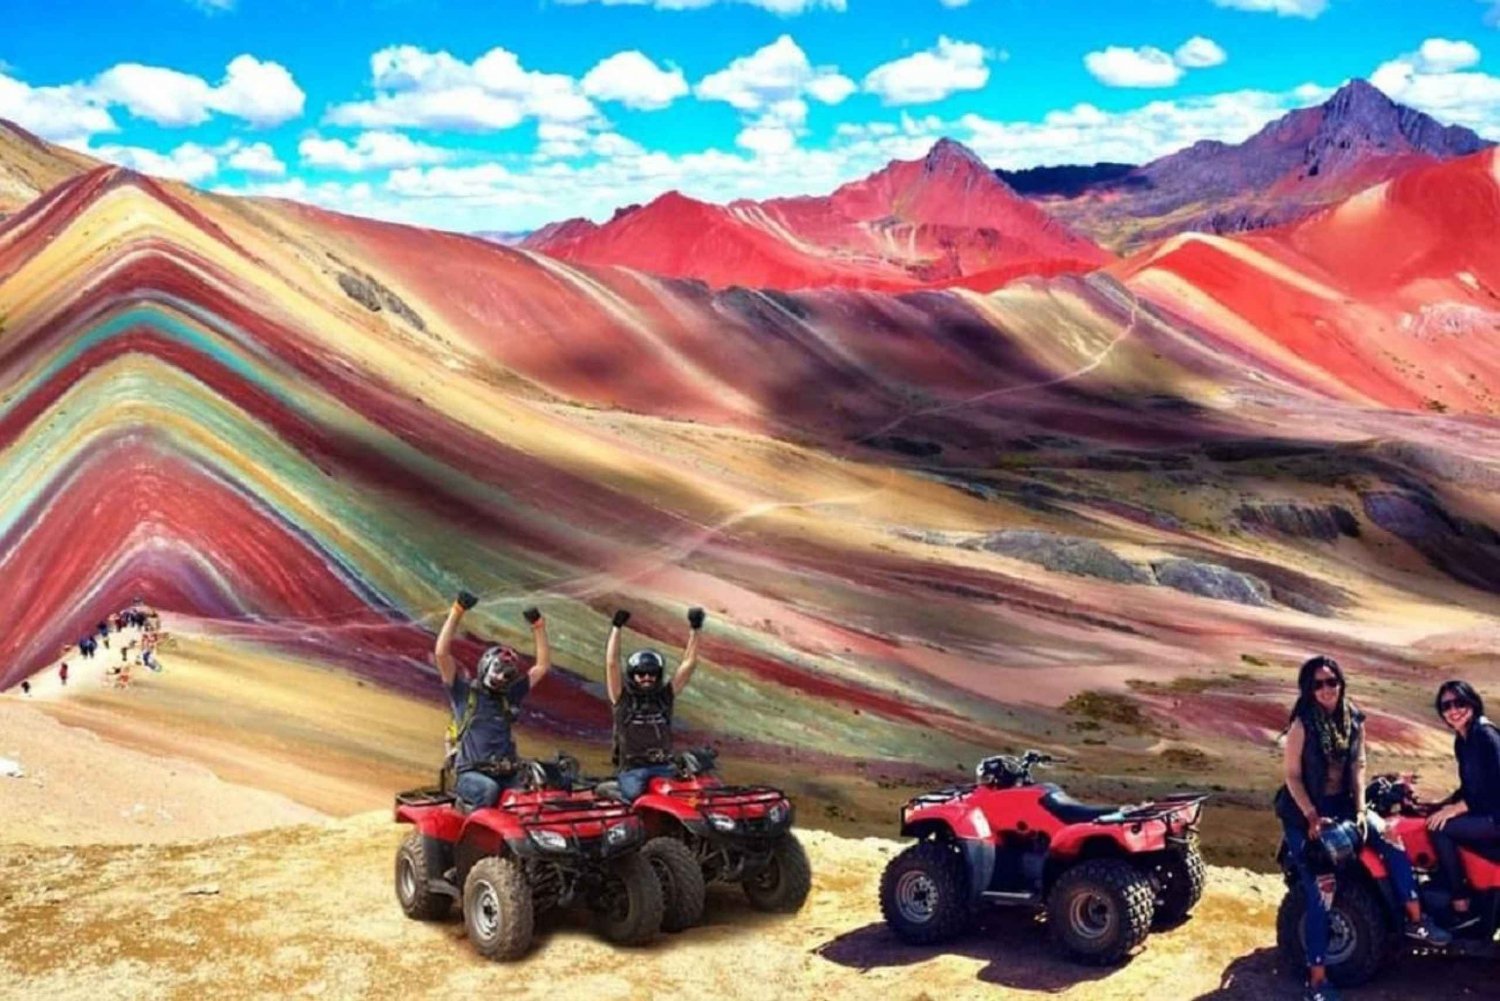 Cuzco: Rainbow Mountain Vinicunca ATV (quads)